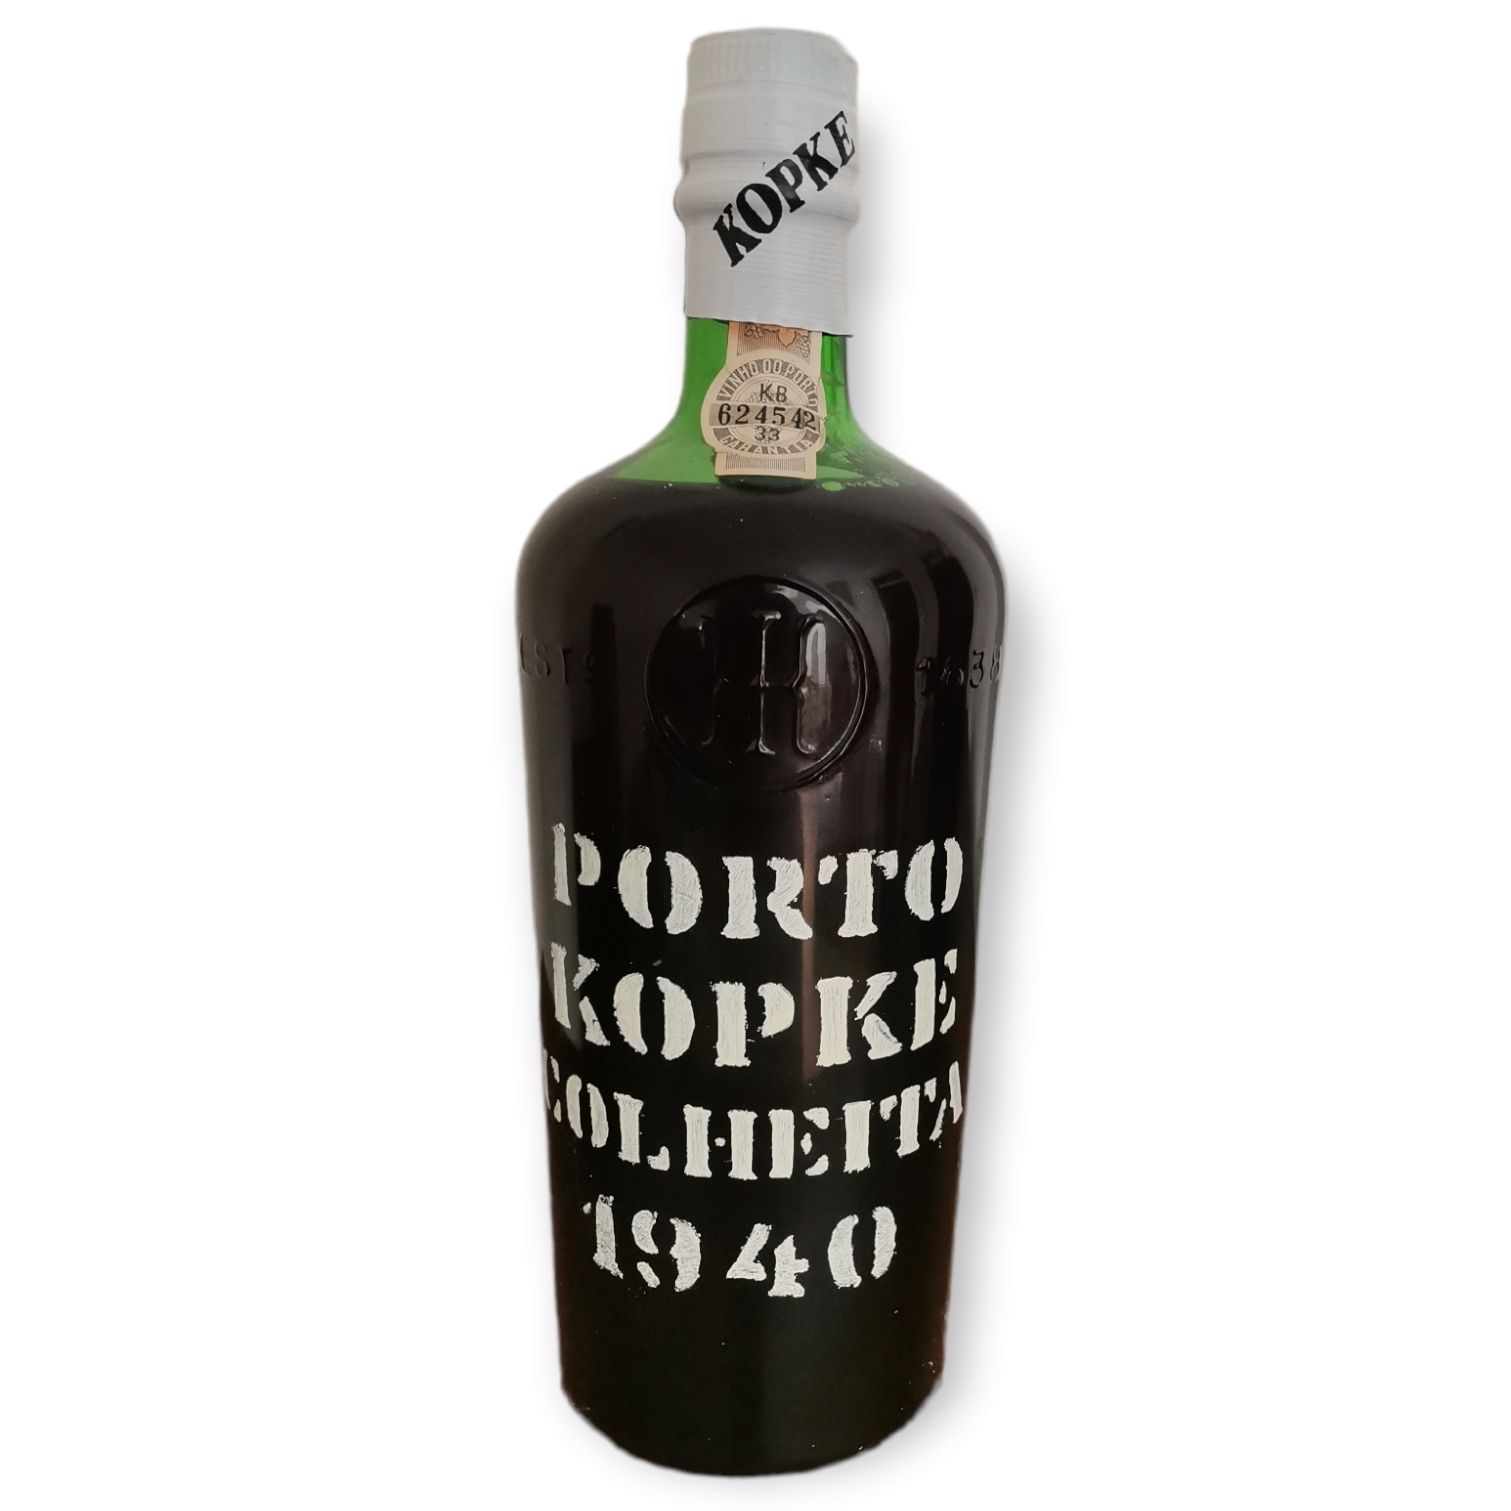 Kopke KOPKE Bottiglia di vino Porto. Vendemmia del 1940, imbottigliato nel 1982.